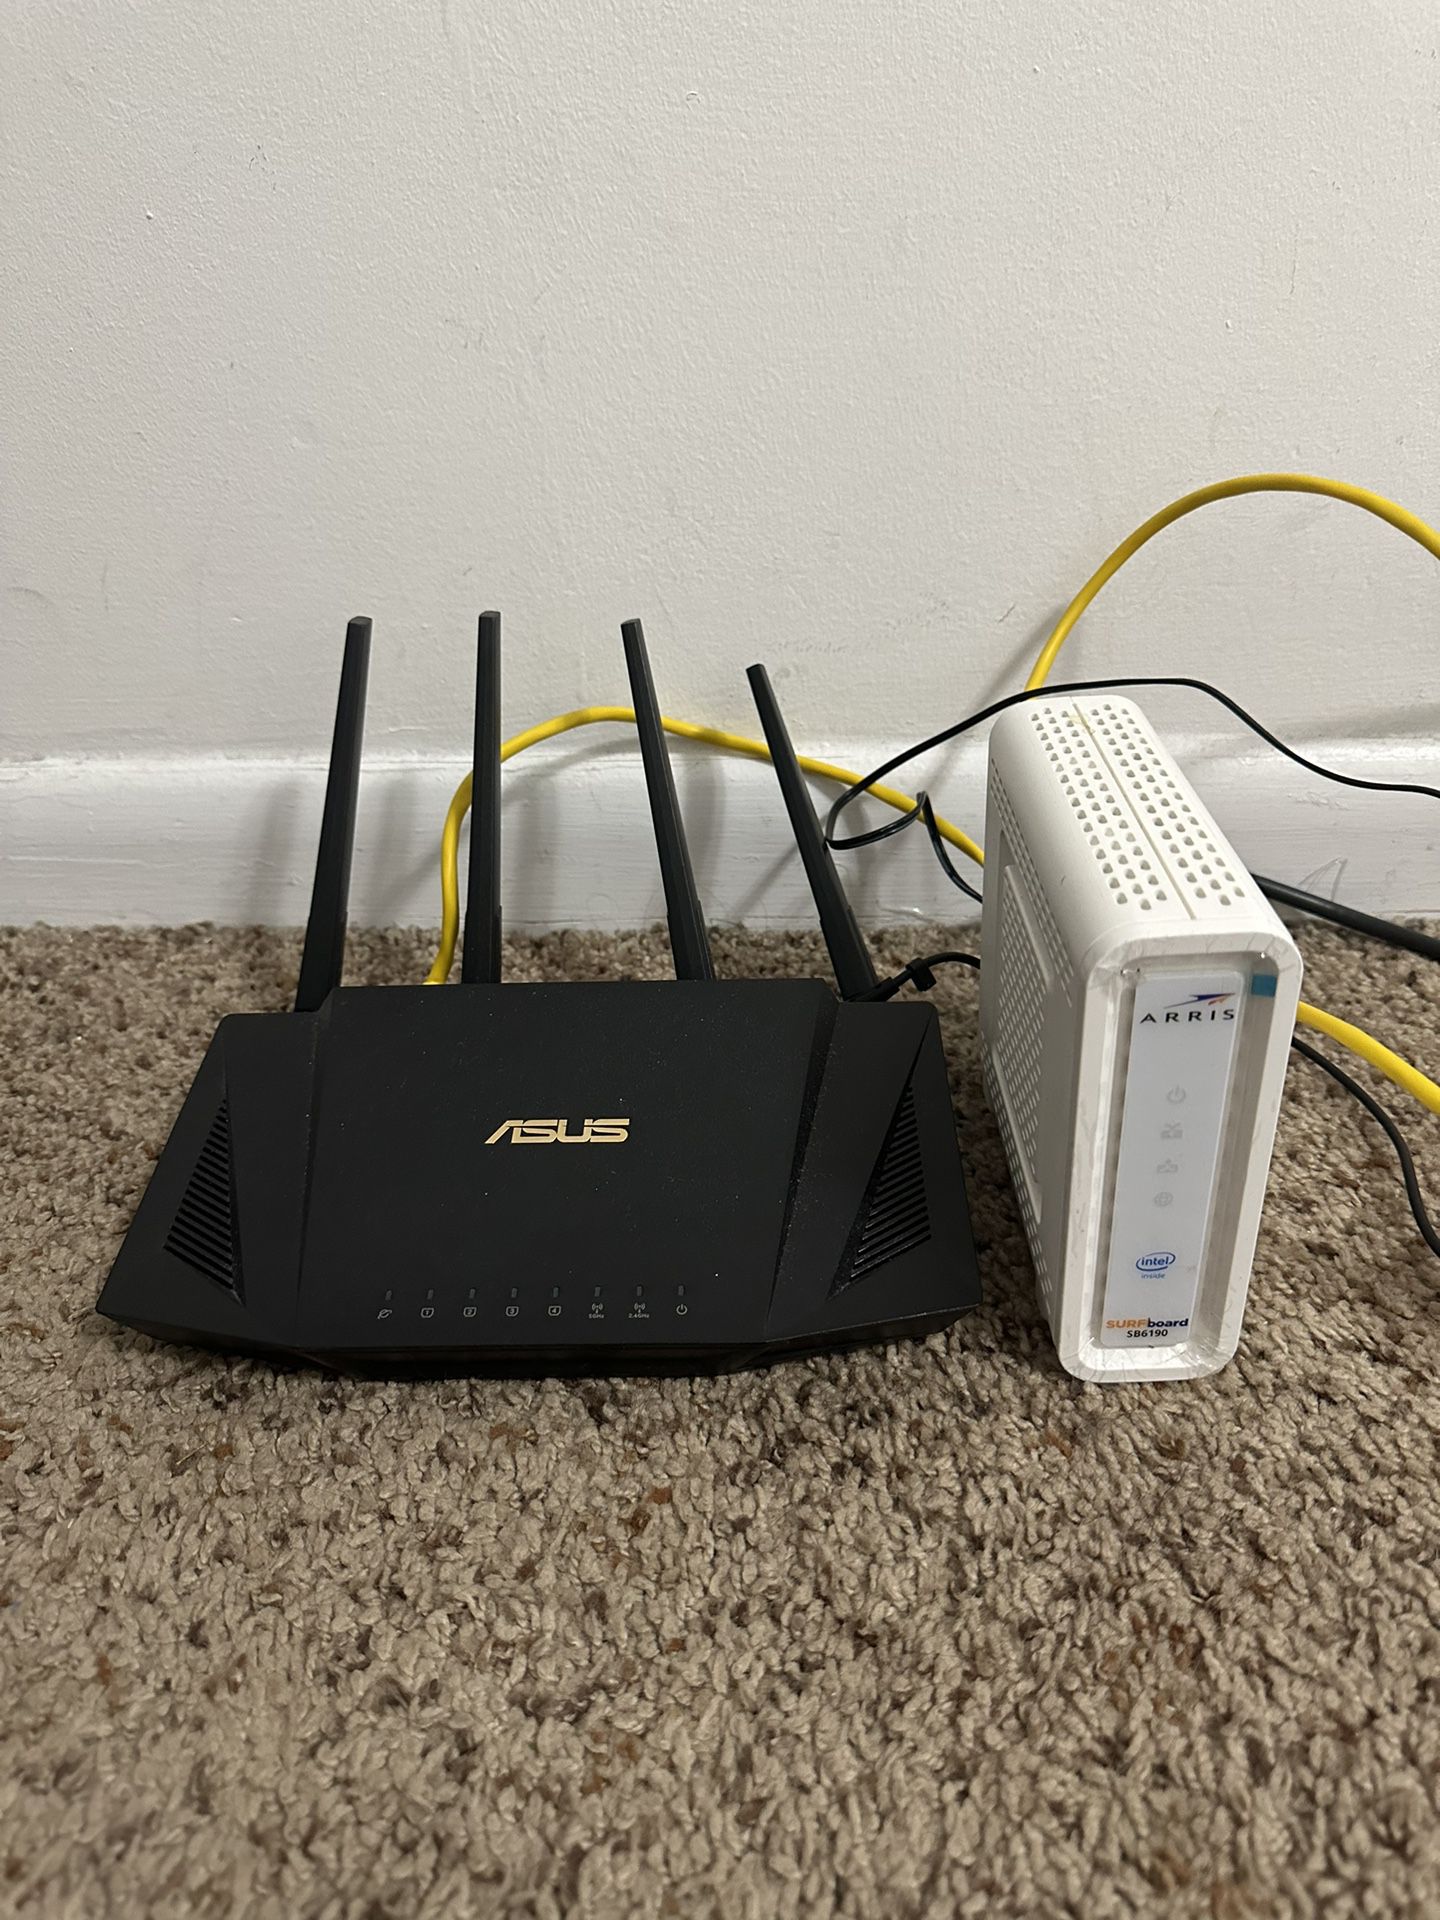 ASUS - Router.     /   ARRIS - Cable Modem